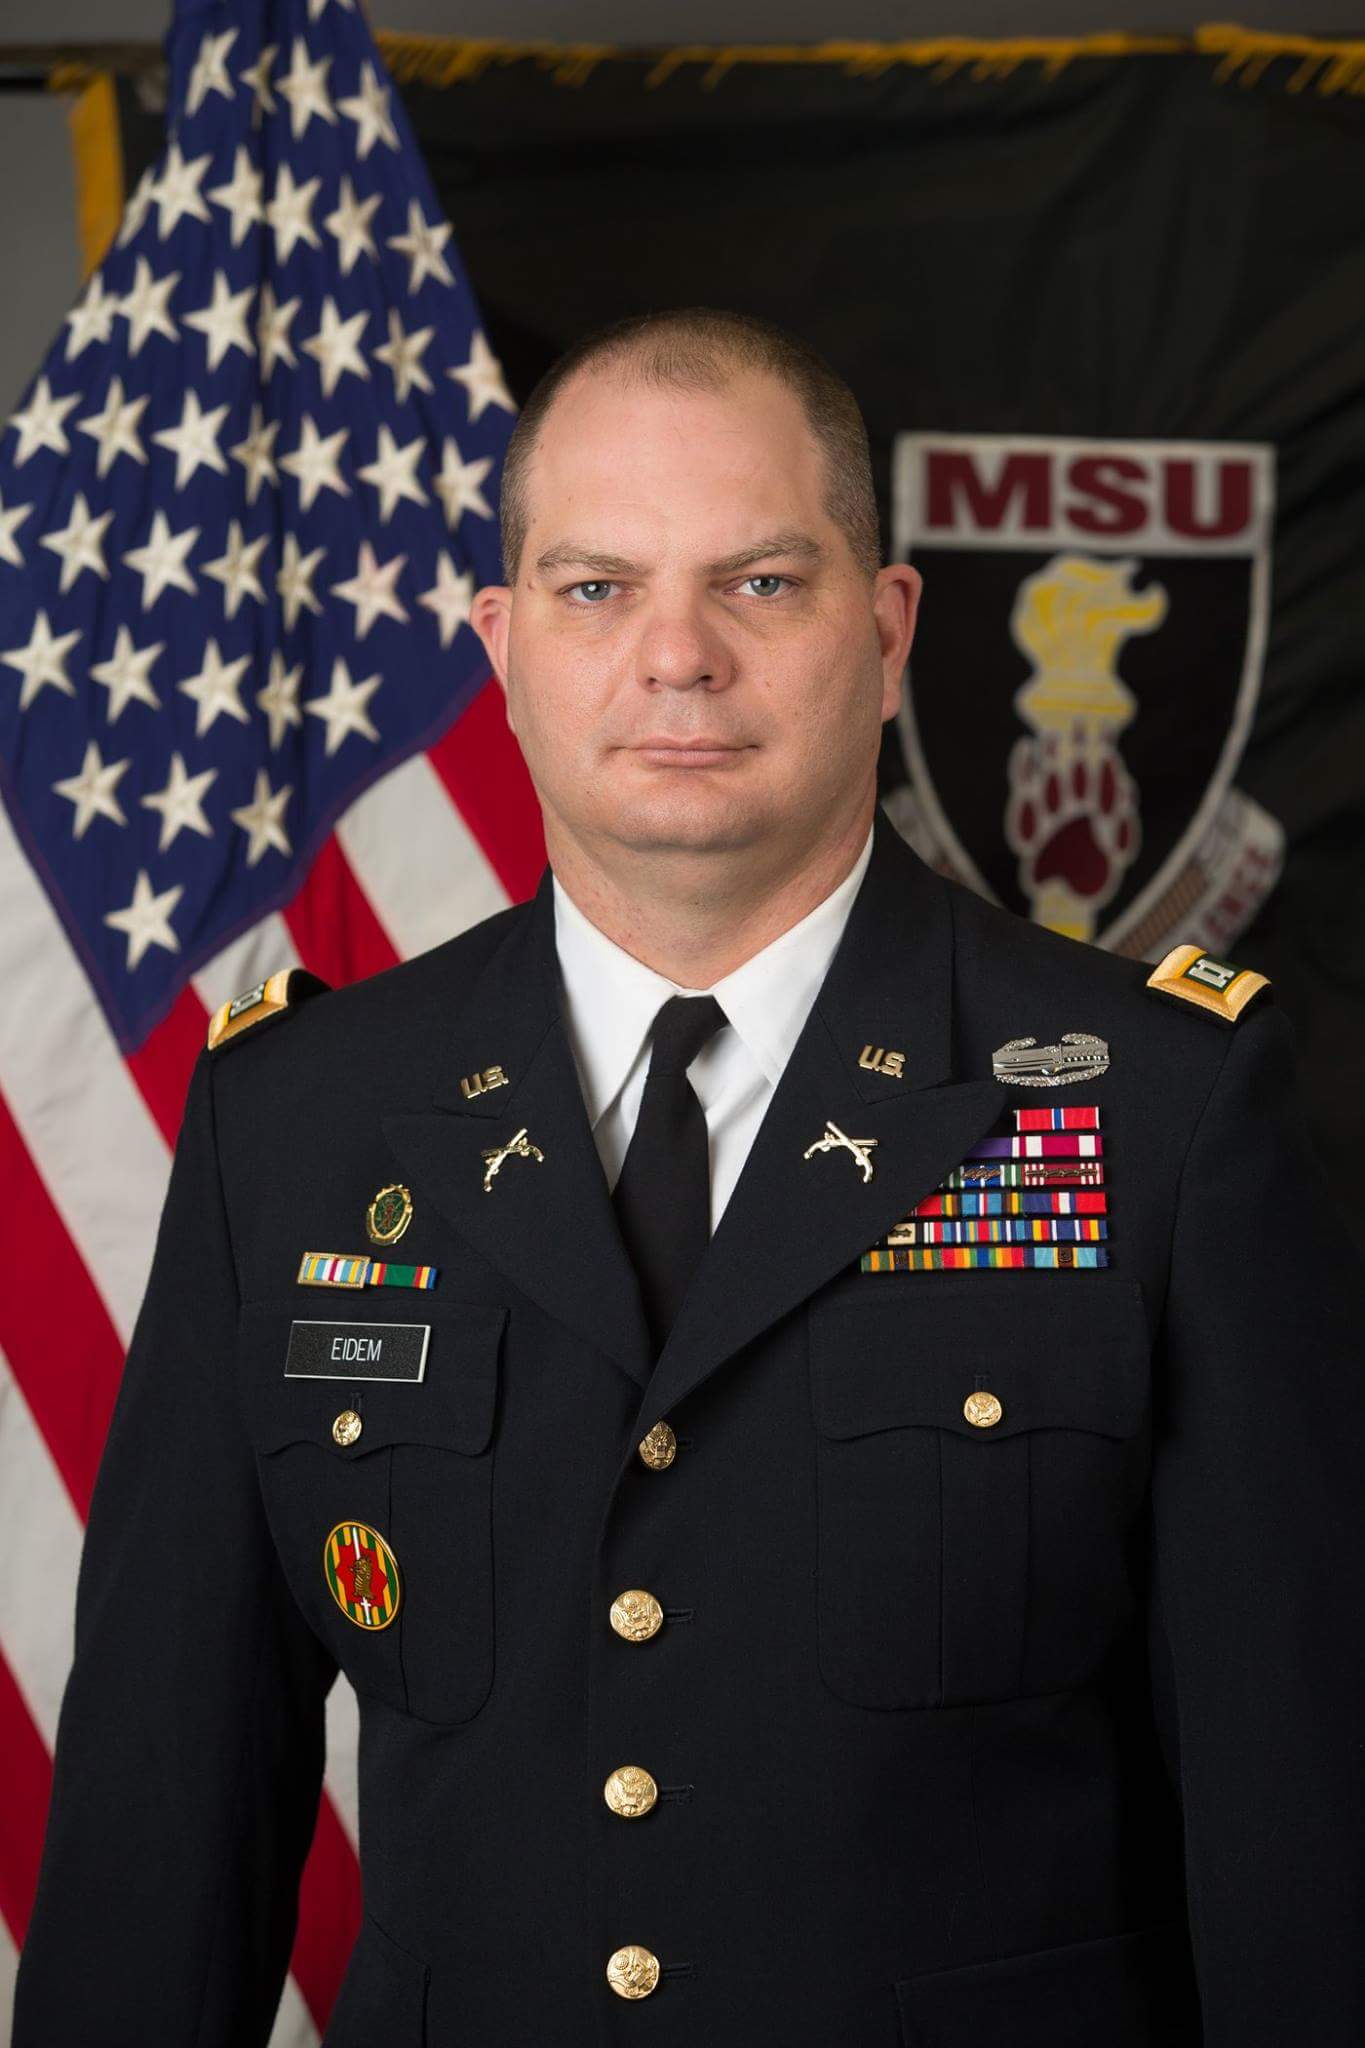 Captain Aaron J Eidem, US Army Active Duty